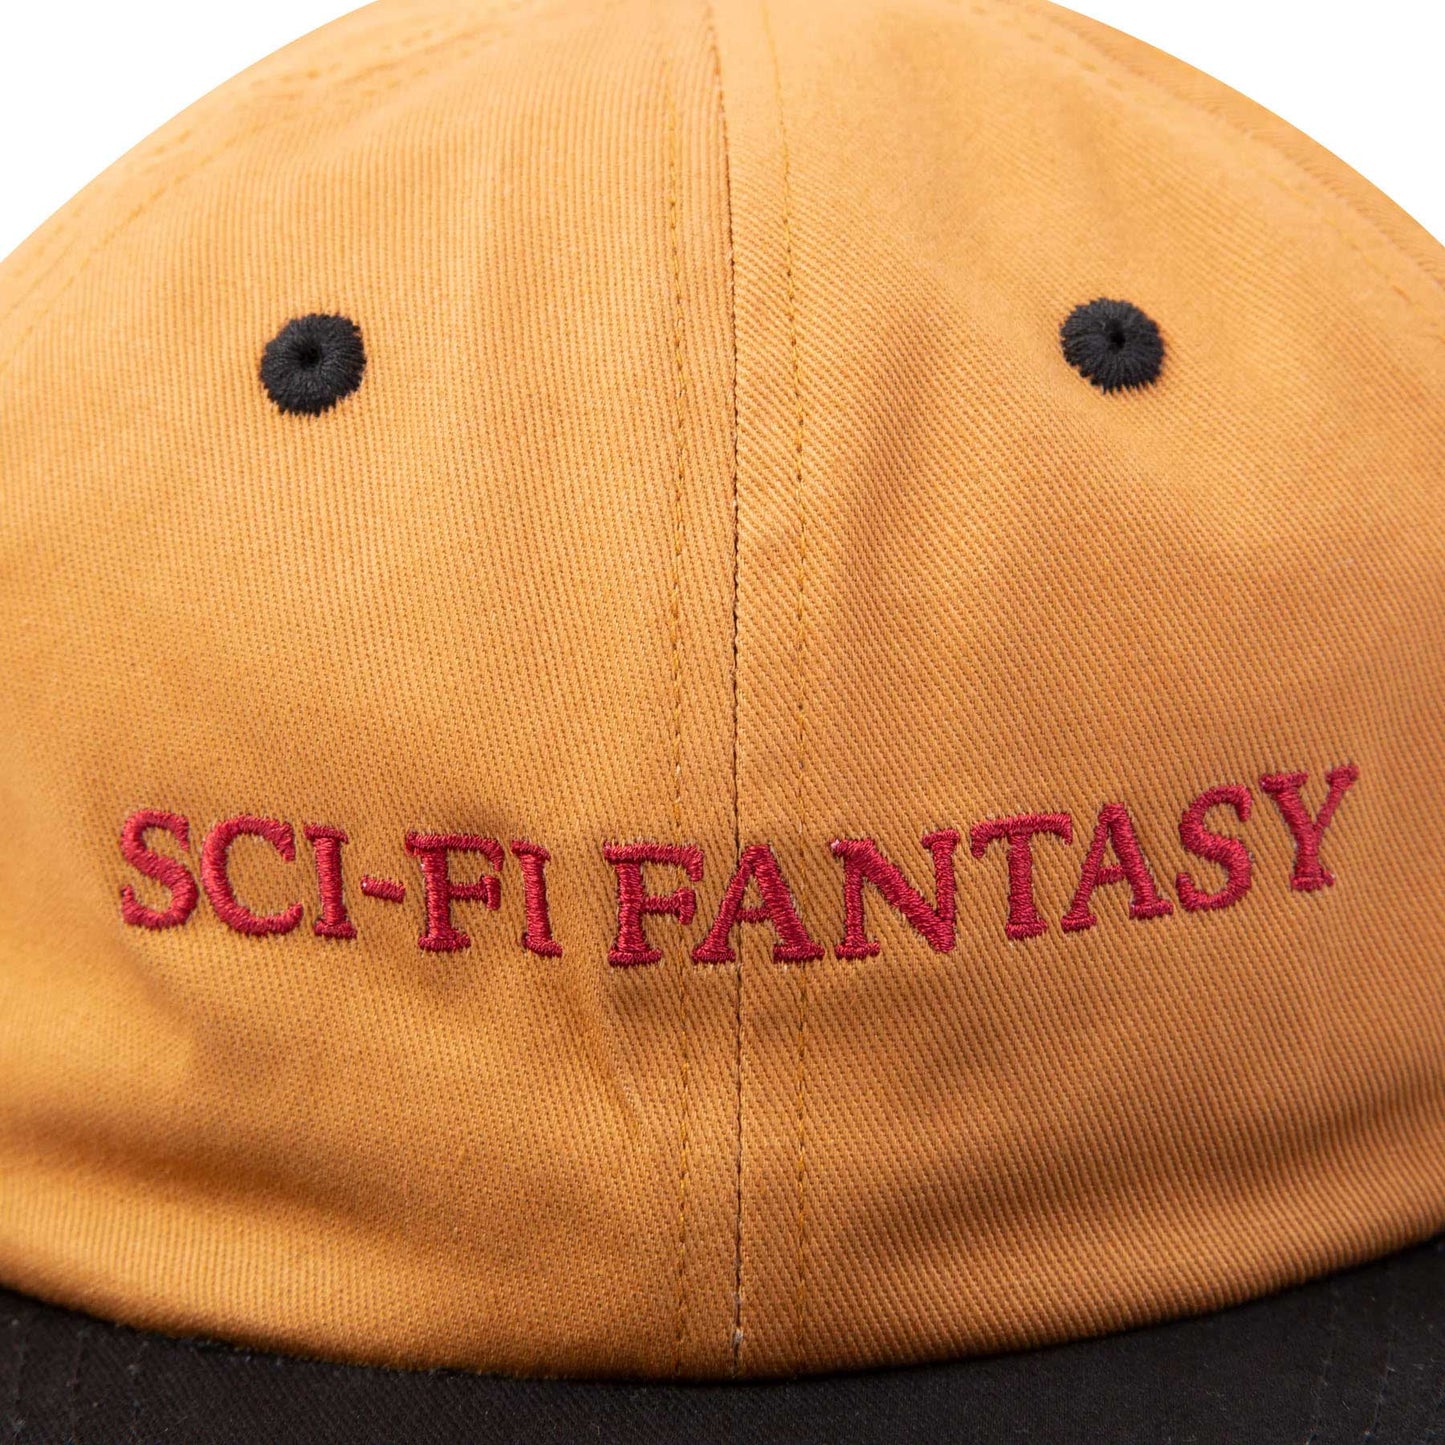 Sci-Fi Fantasy Flat Logo Hat, brown/black - Tiki Room Skateboards - 2